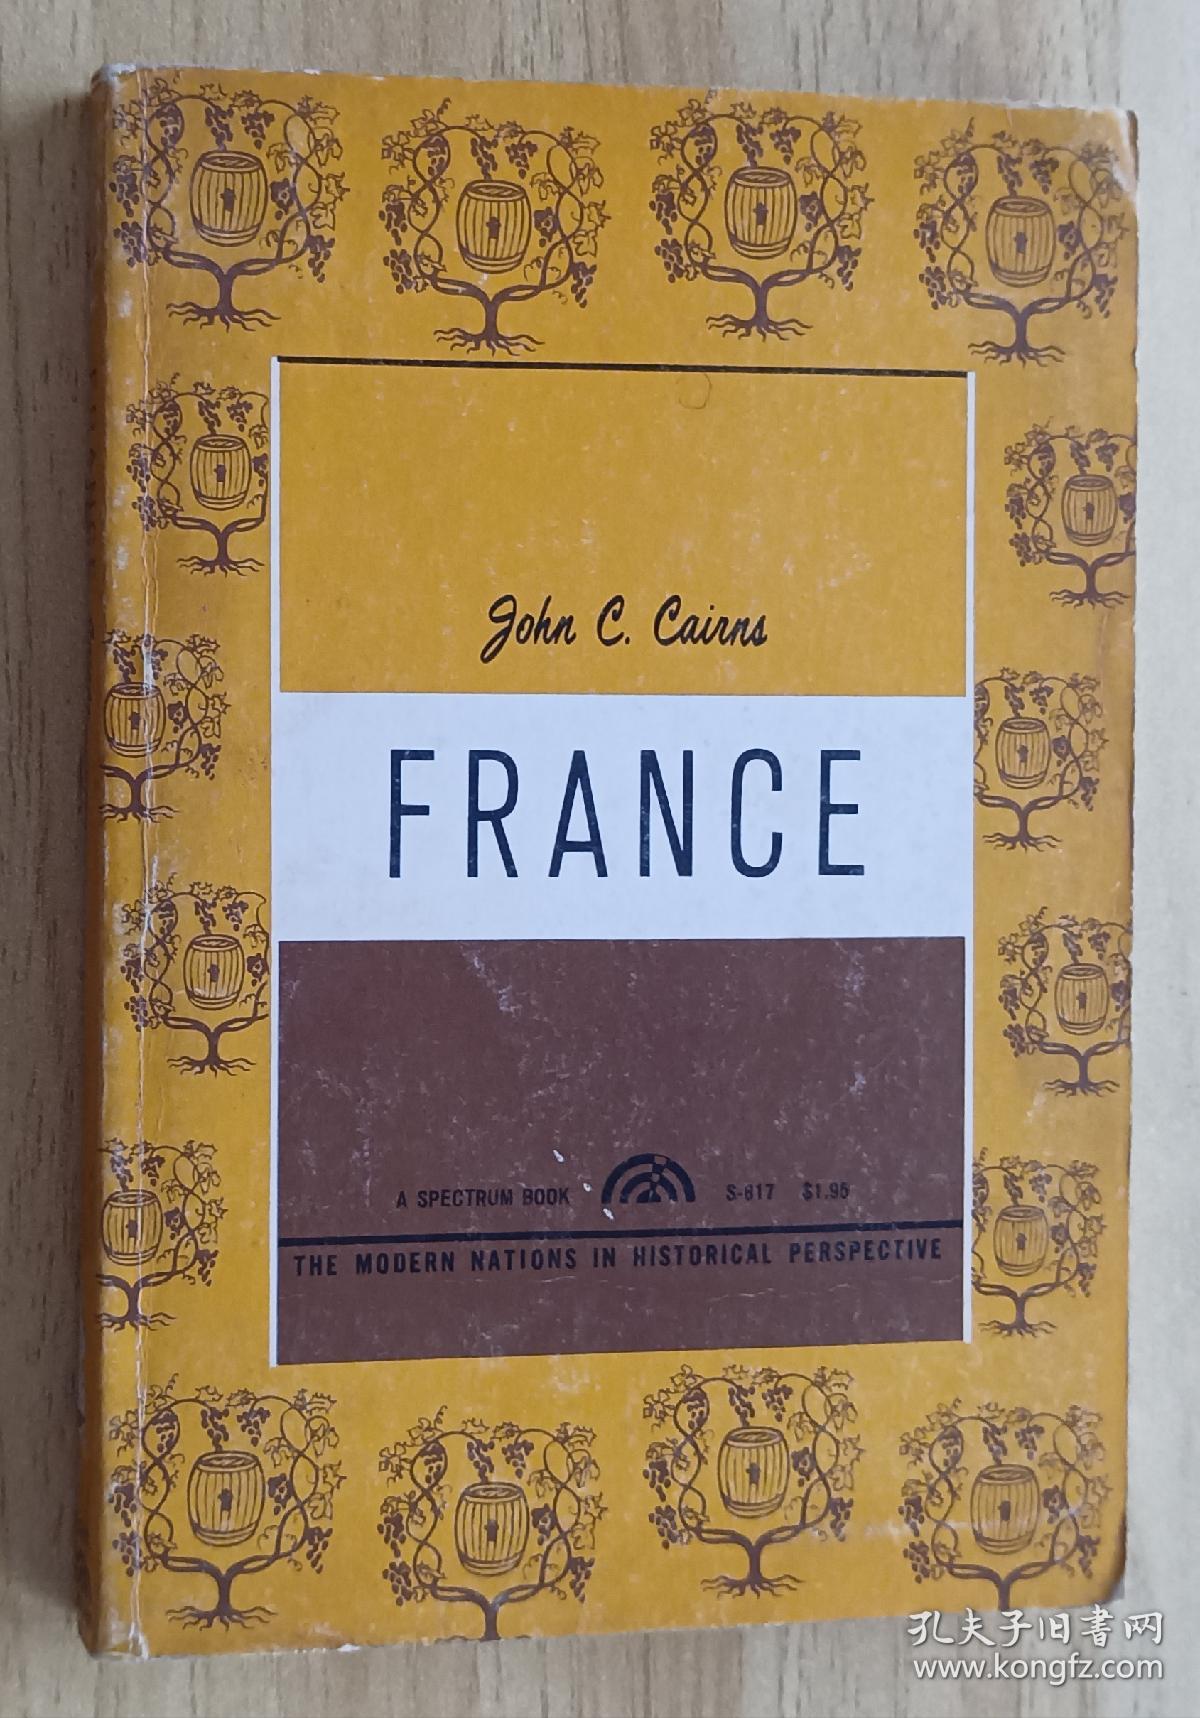 法文书 France de John C. Cairns (Author)